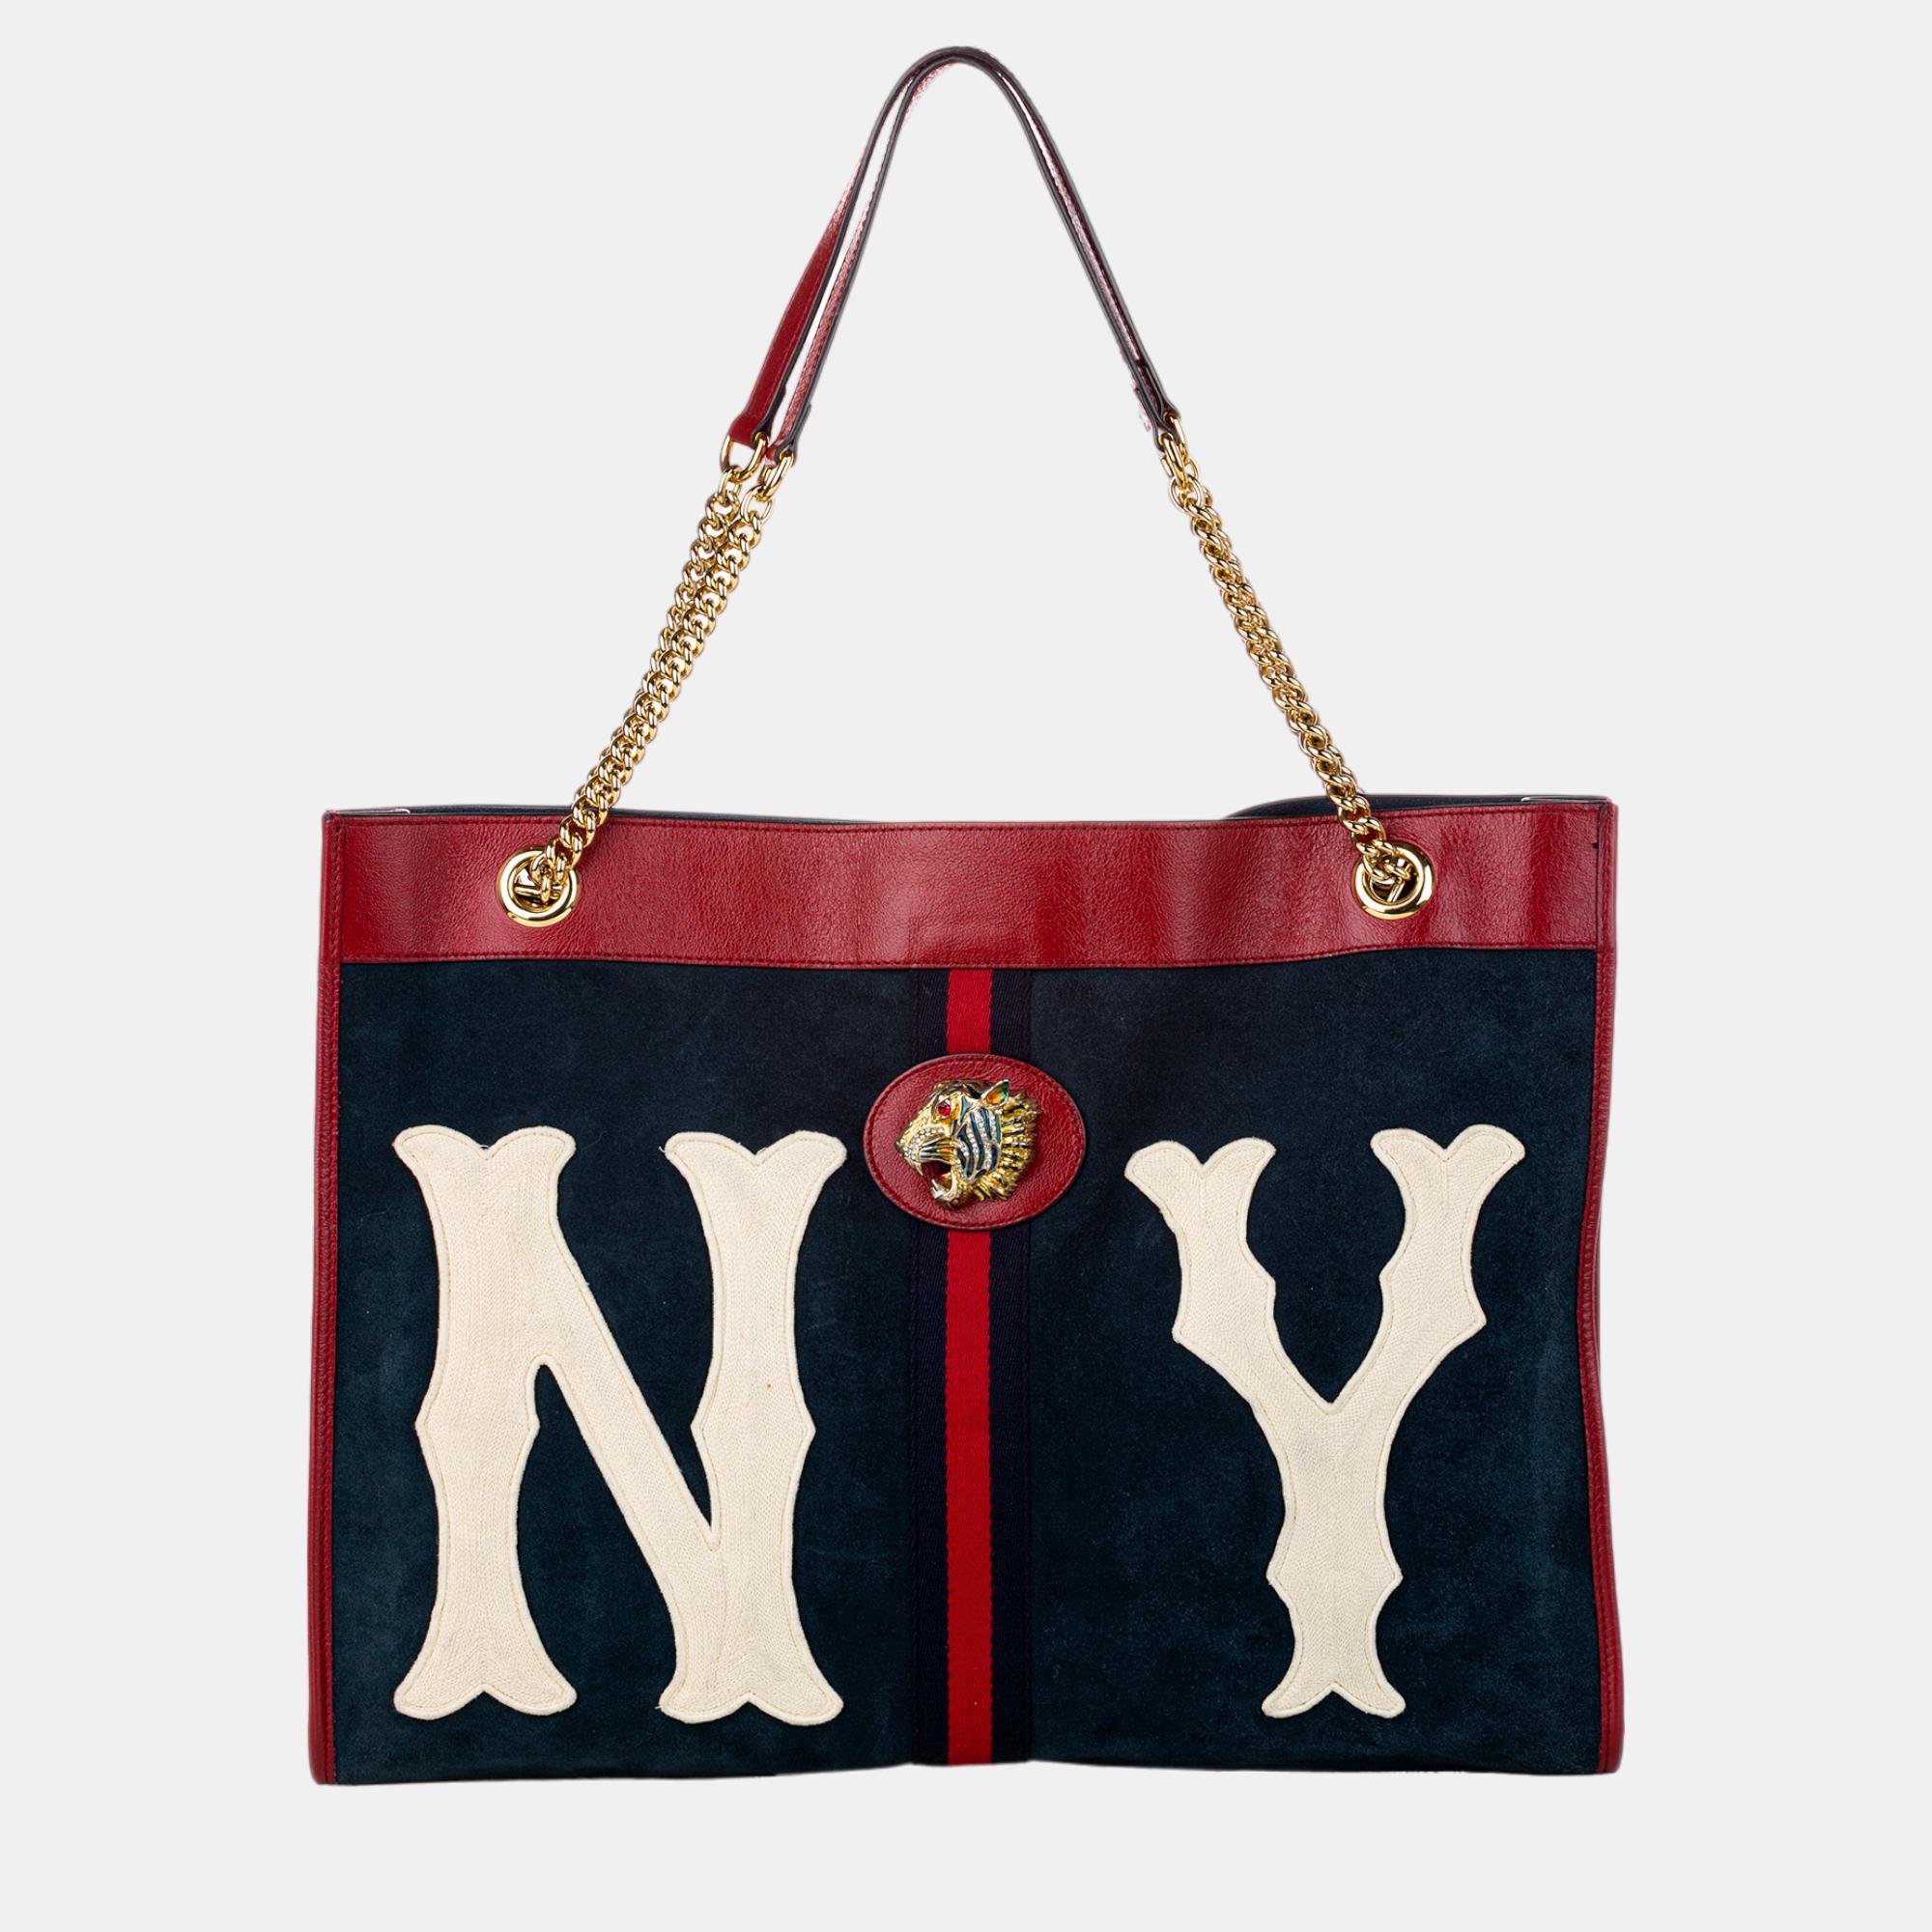 Gucci navy blue/red rajah suede tote bag